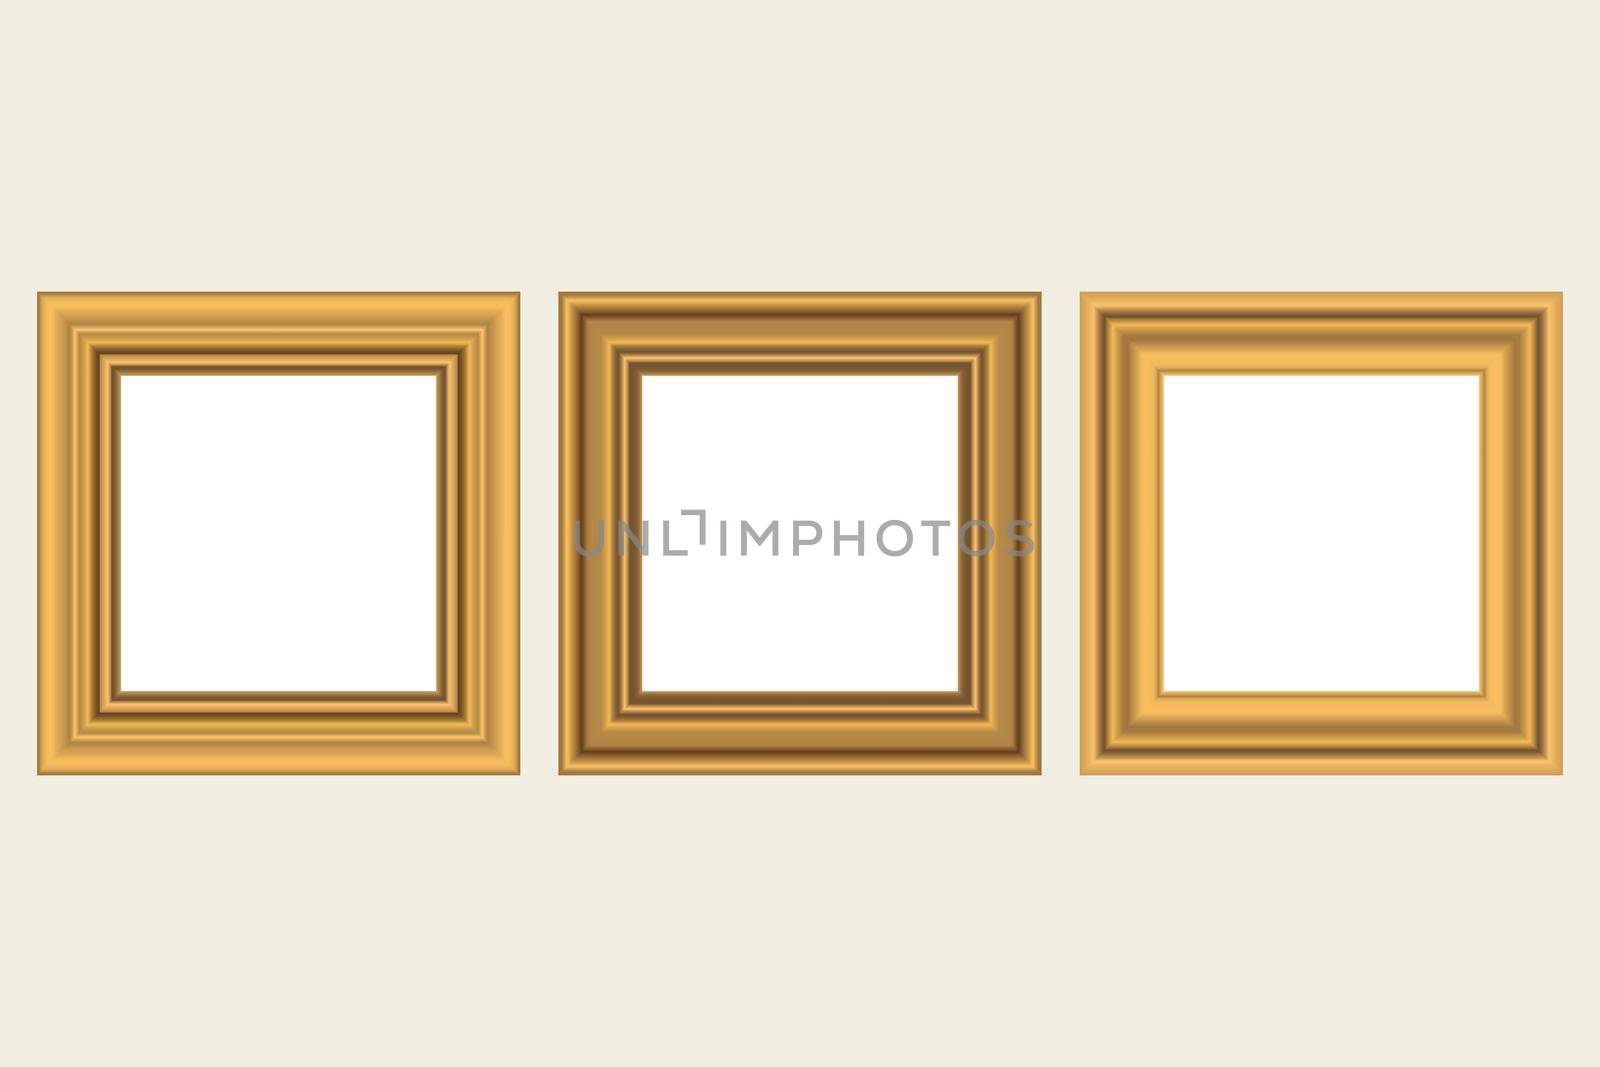 Set of squared golden vintage wooden frame for your design. Vintage cover. Place for text. Vintage antique gold modern rectangular frames. Template vector illustration.